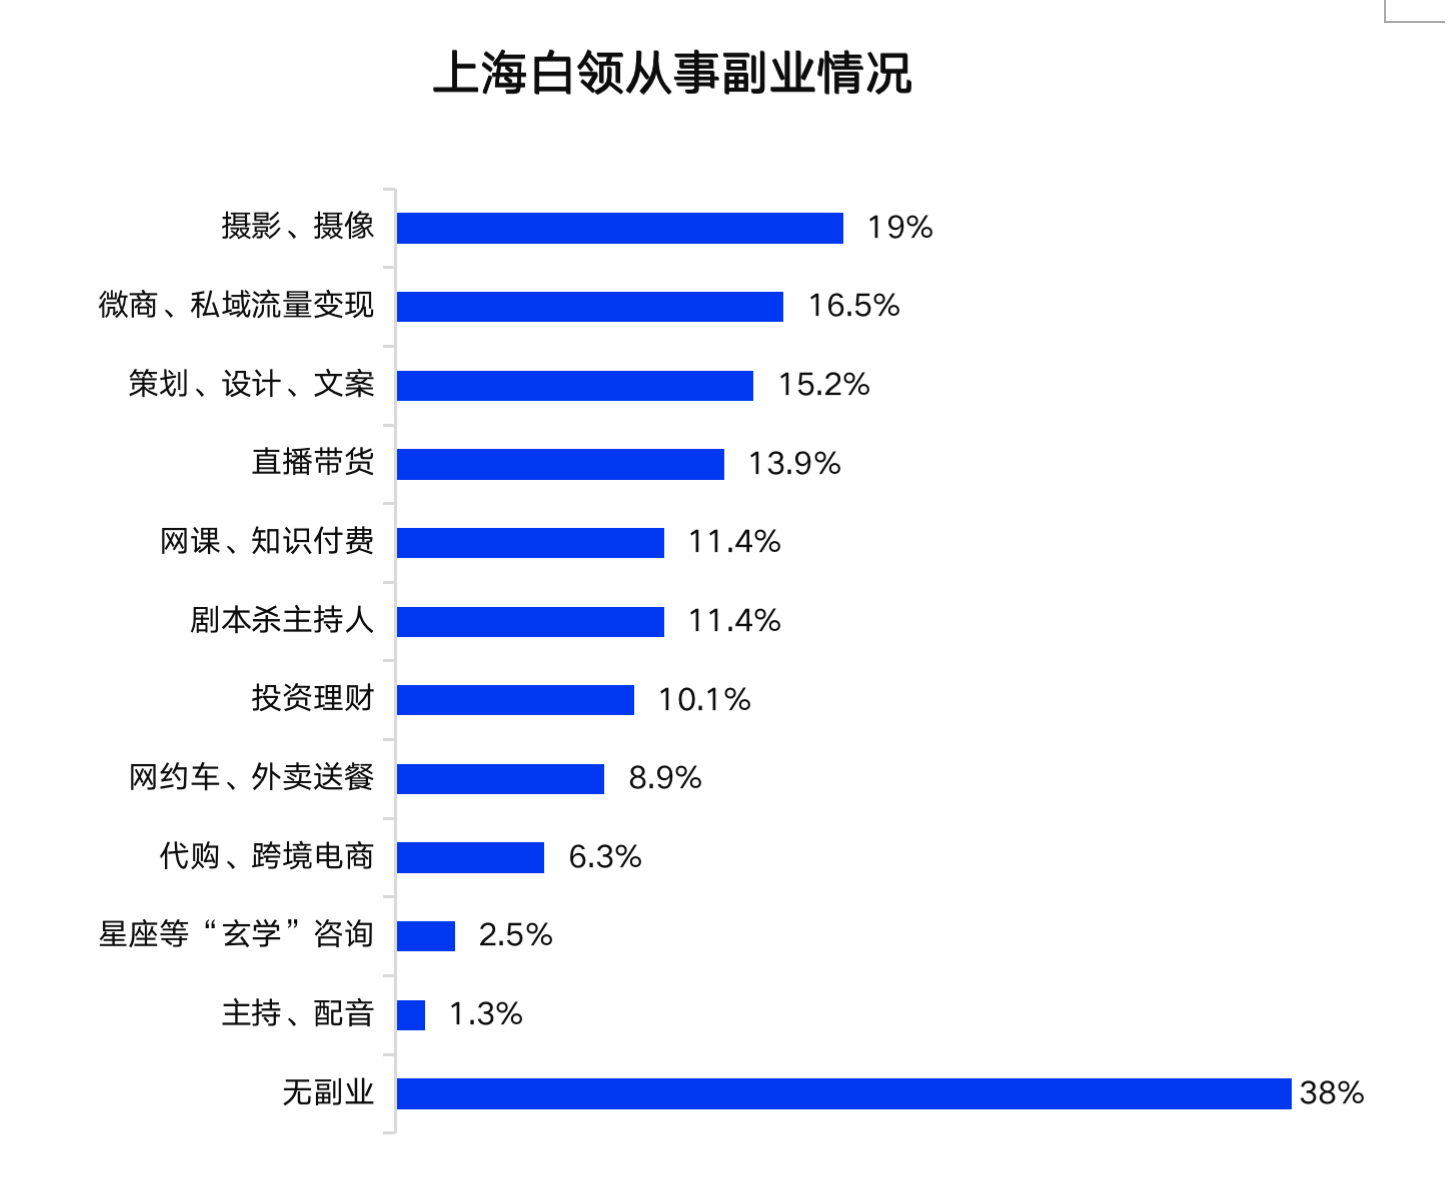 【聚焦上海】2022年上海白领生活满意度指数上升 六成以上开拓副业